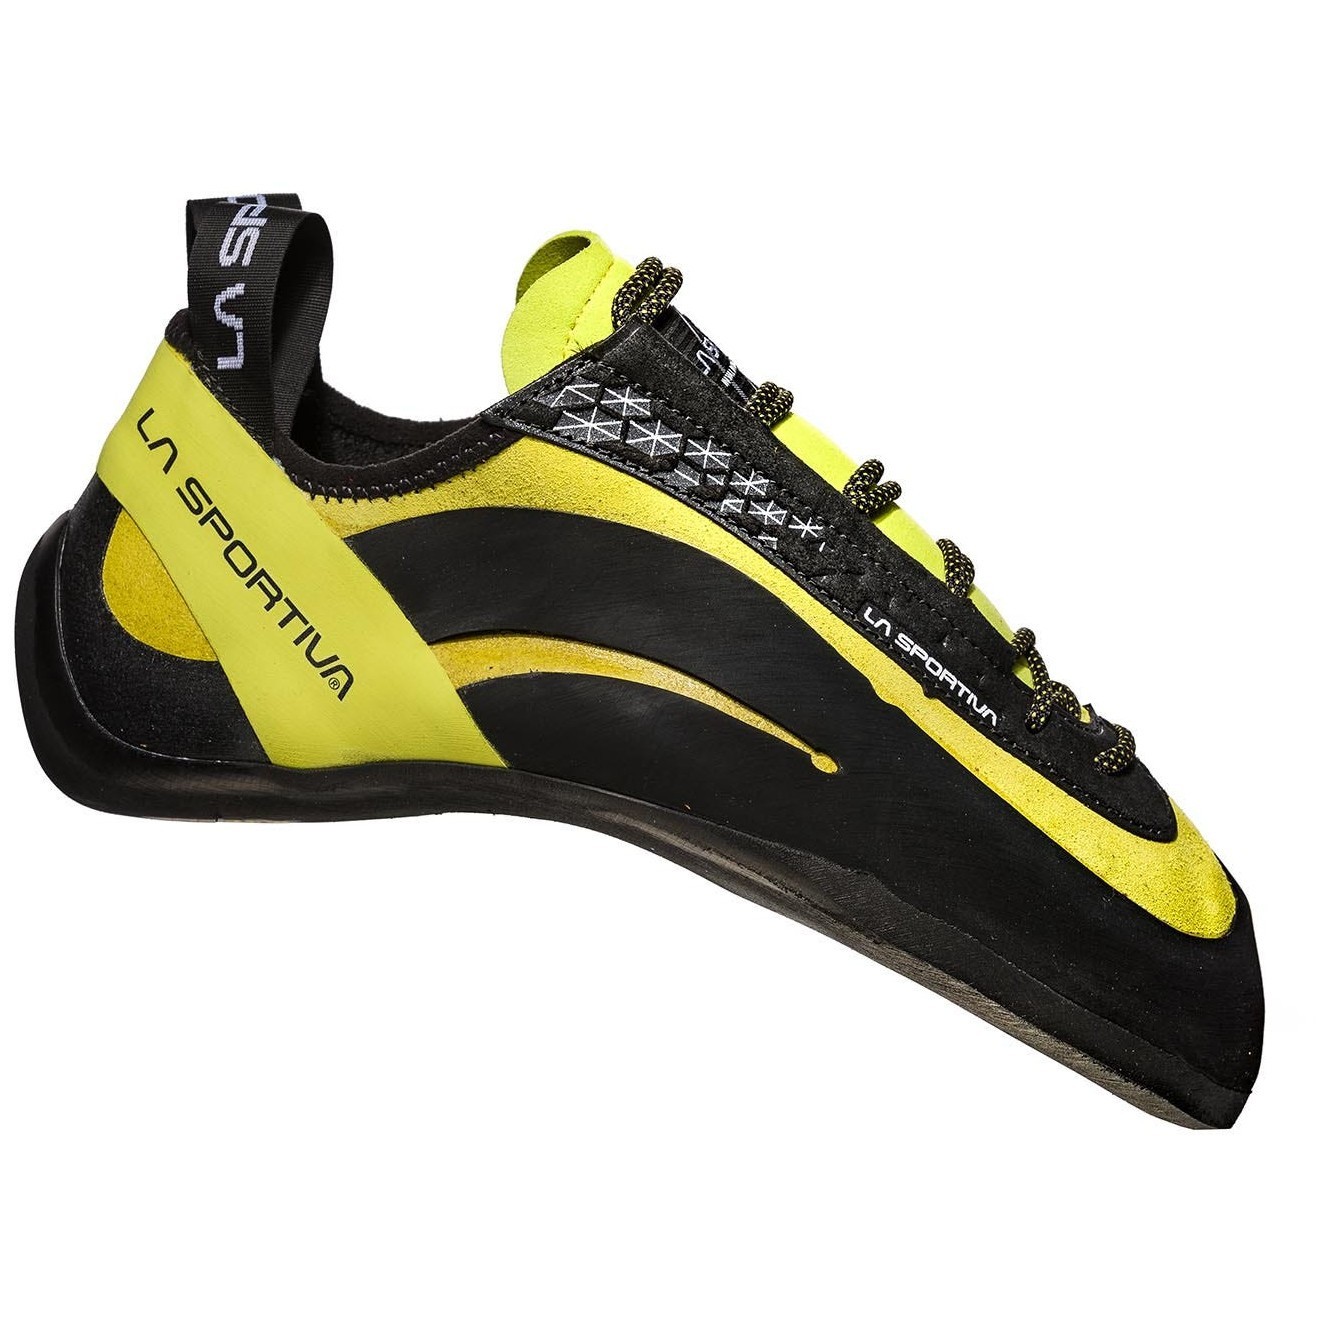 Lezečky La Sportiva Miura (20J) Velikost bot (EU): 38 / Barva: černá/žlutá